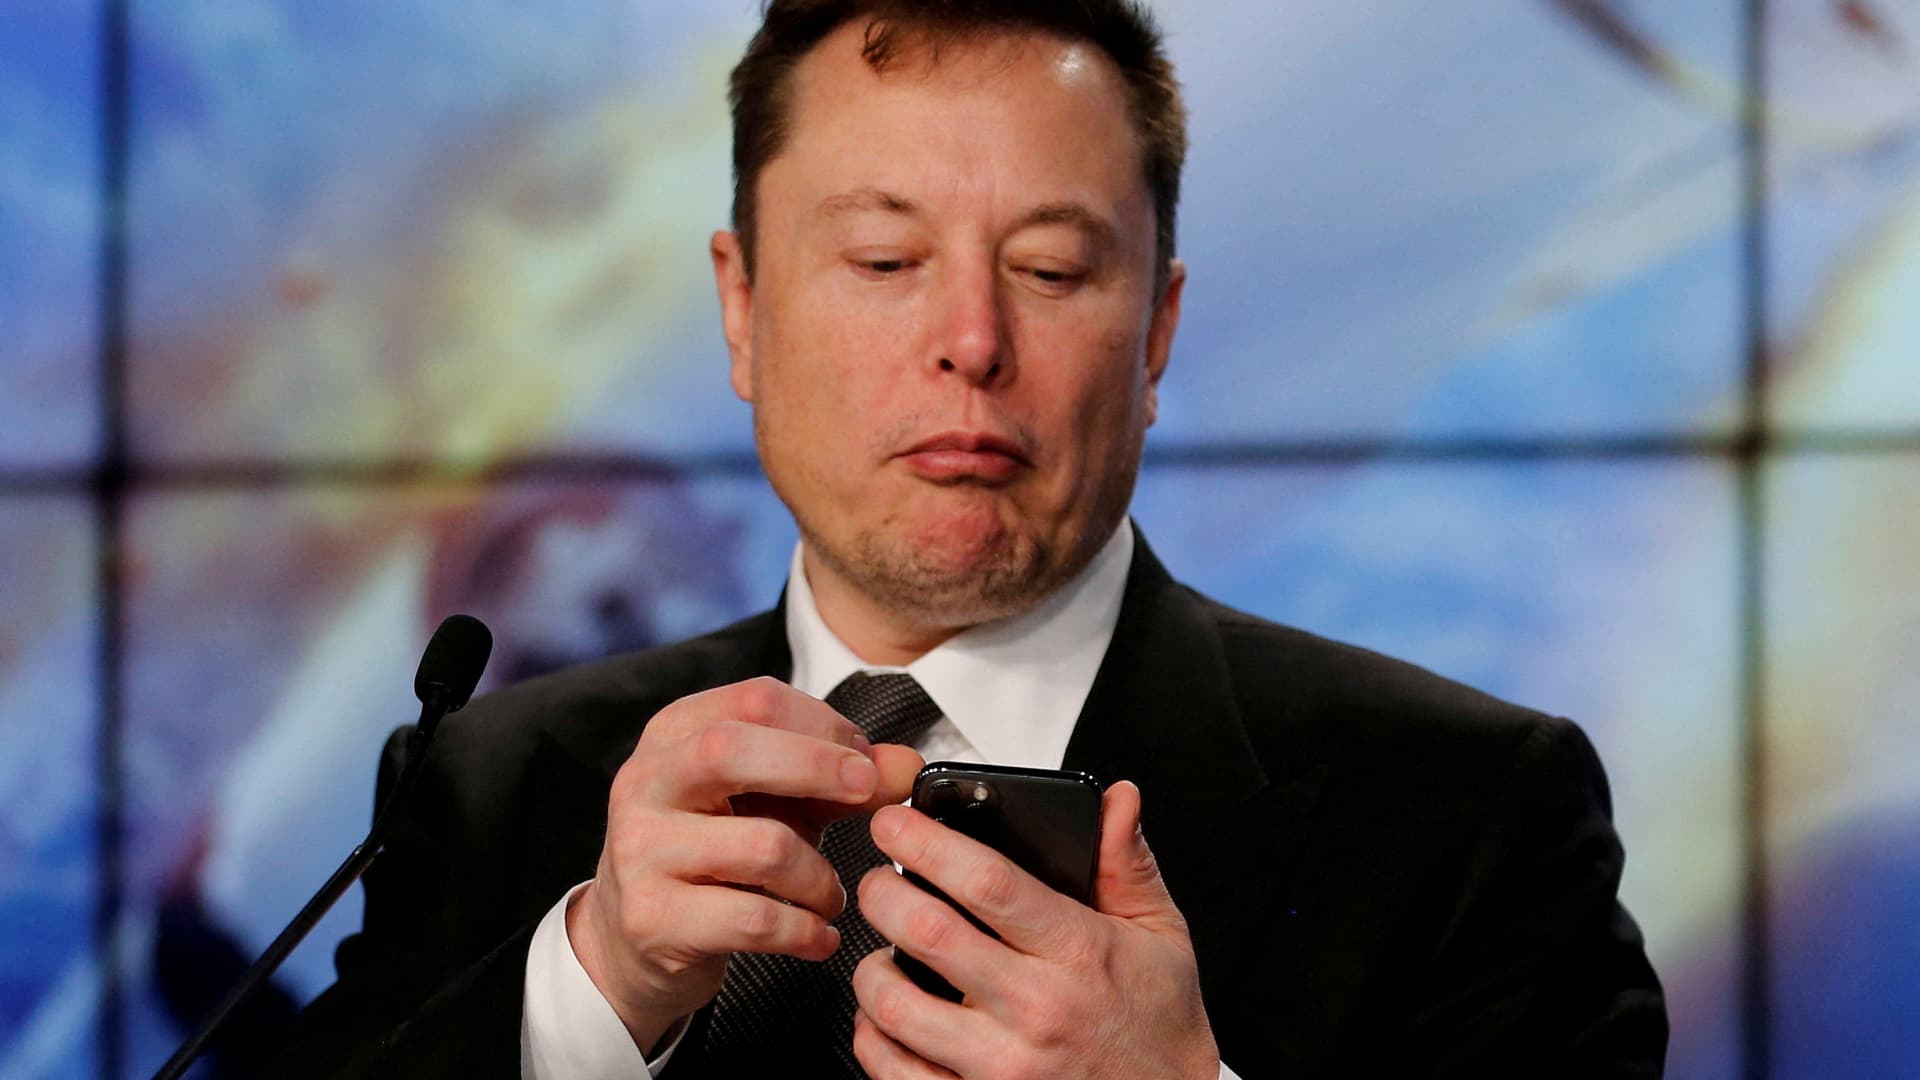 Tesla stock slides on demand concerns, Elon Musk Twitter distraction